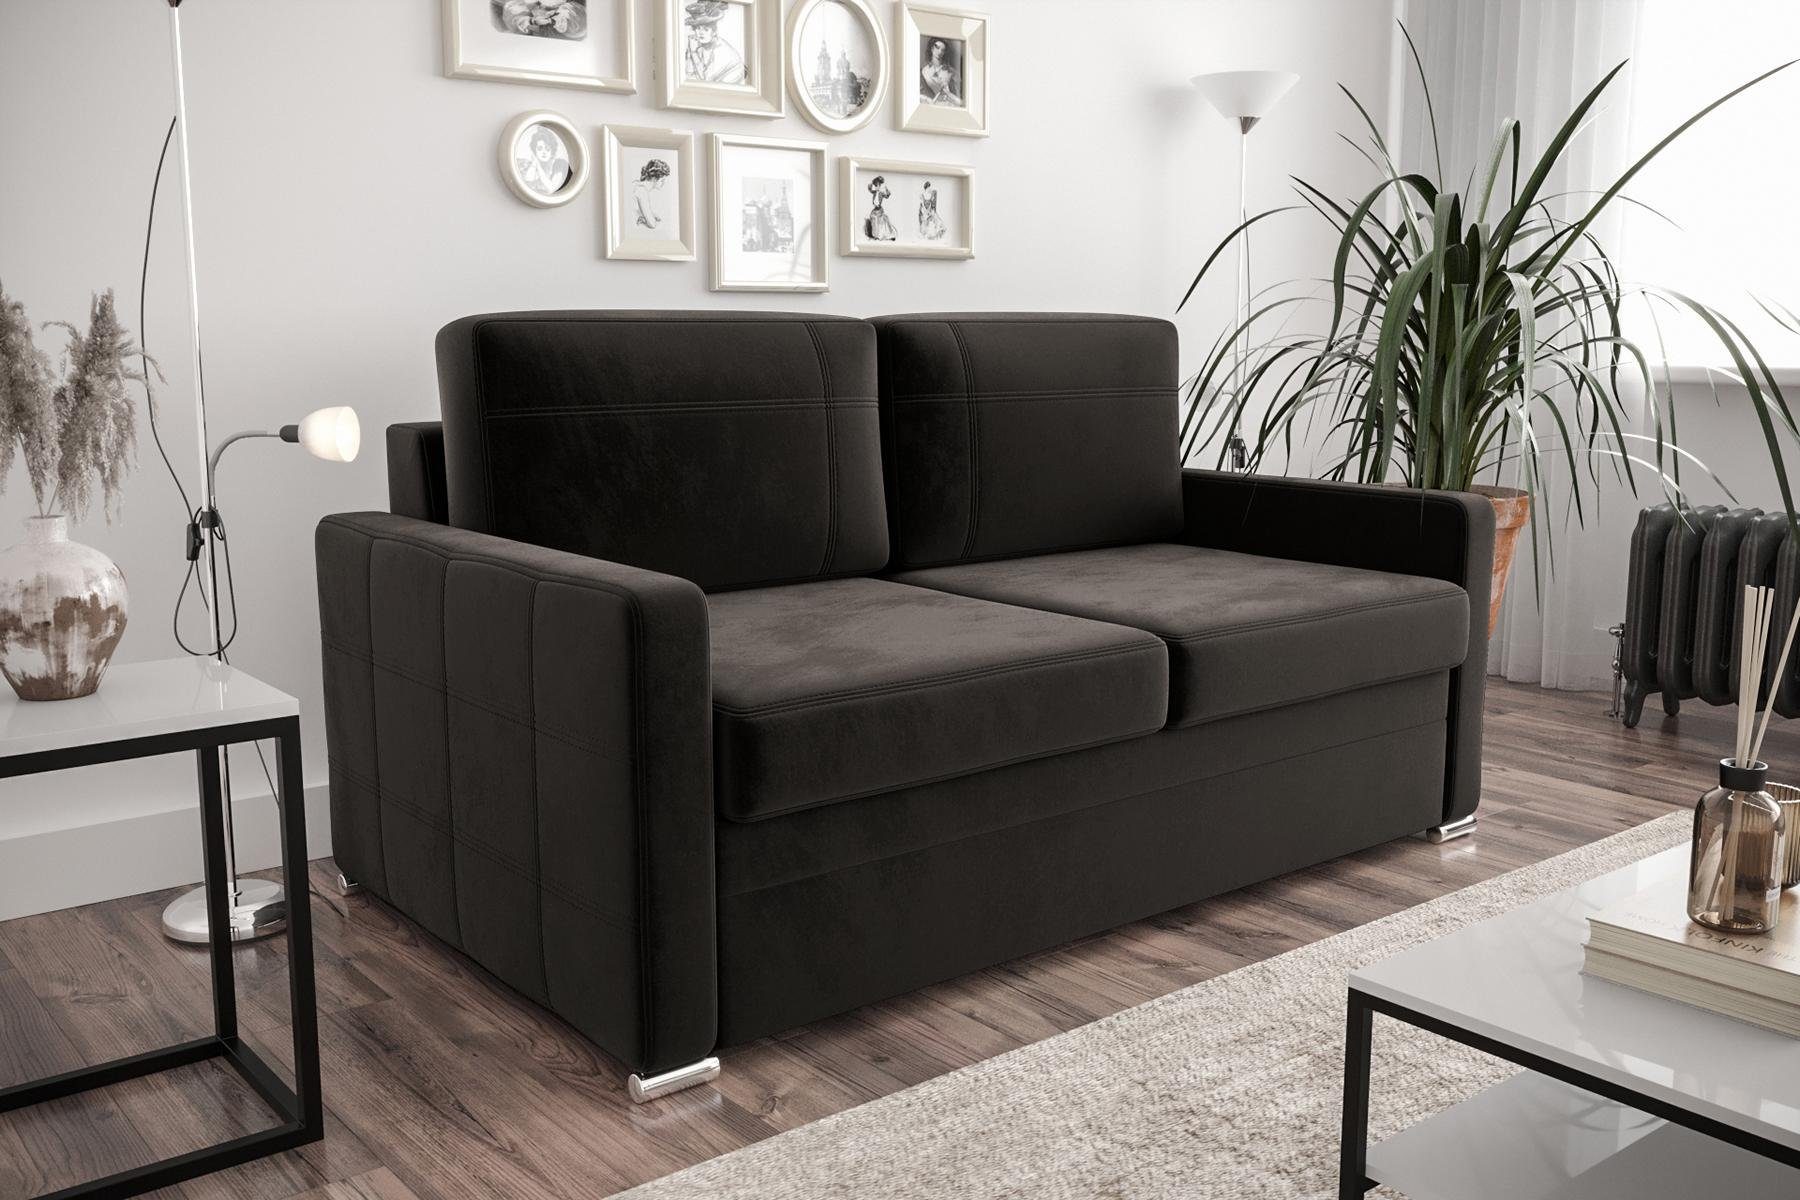 JVmoebel Sofa Designer Schwarz Sofa Europe in | Zweisitzer Couch | Schwarz Luxus 2-Sitzer Couchen, Made Schwarz Polster